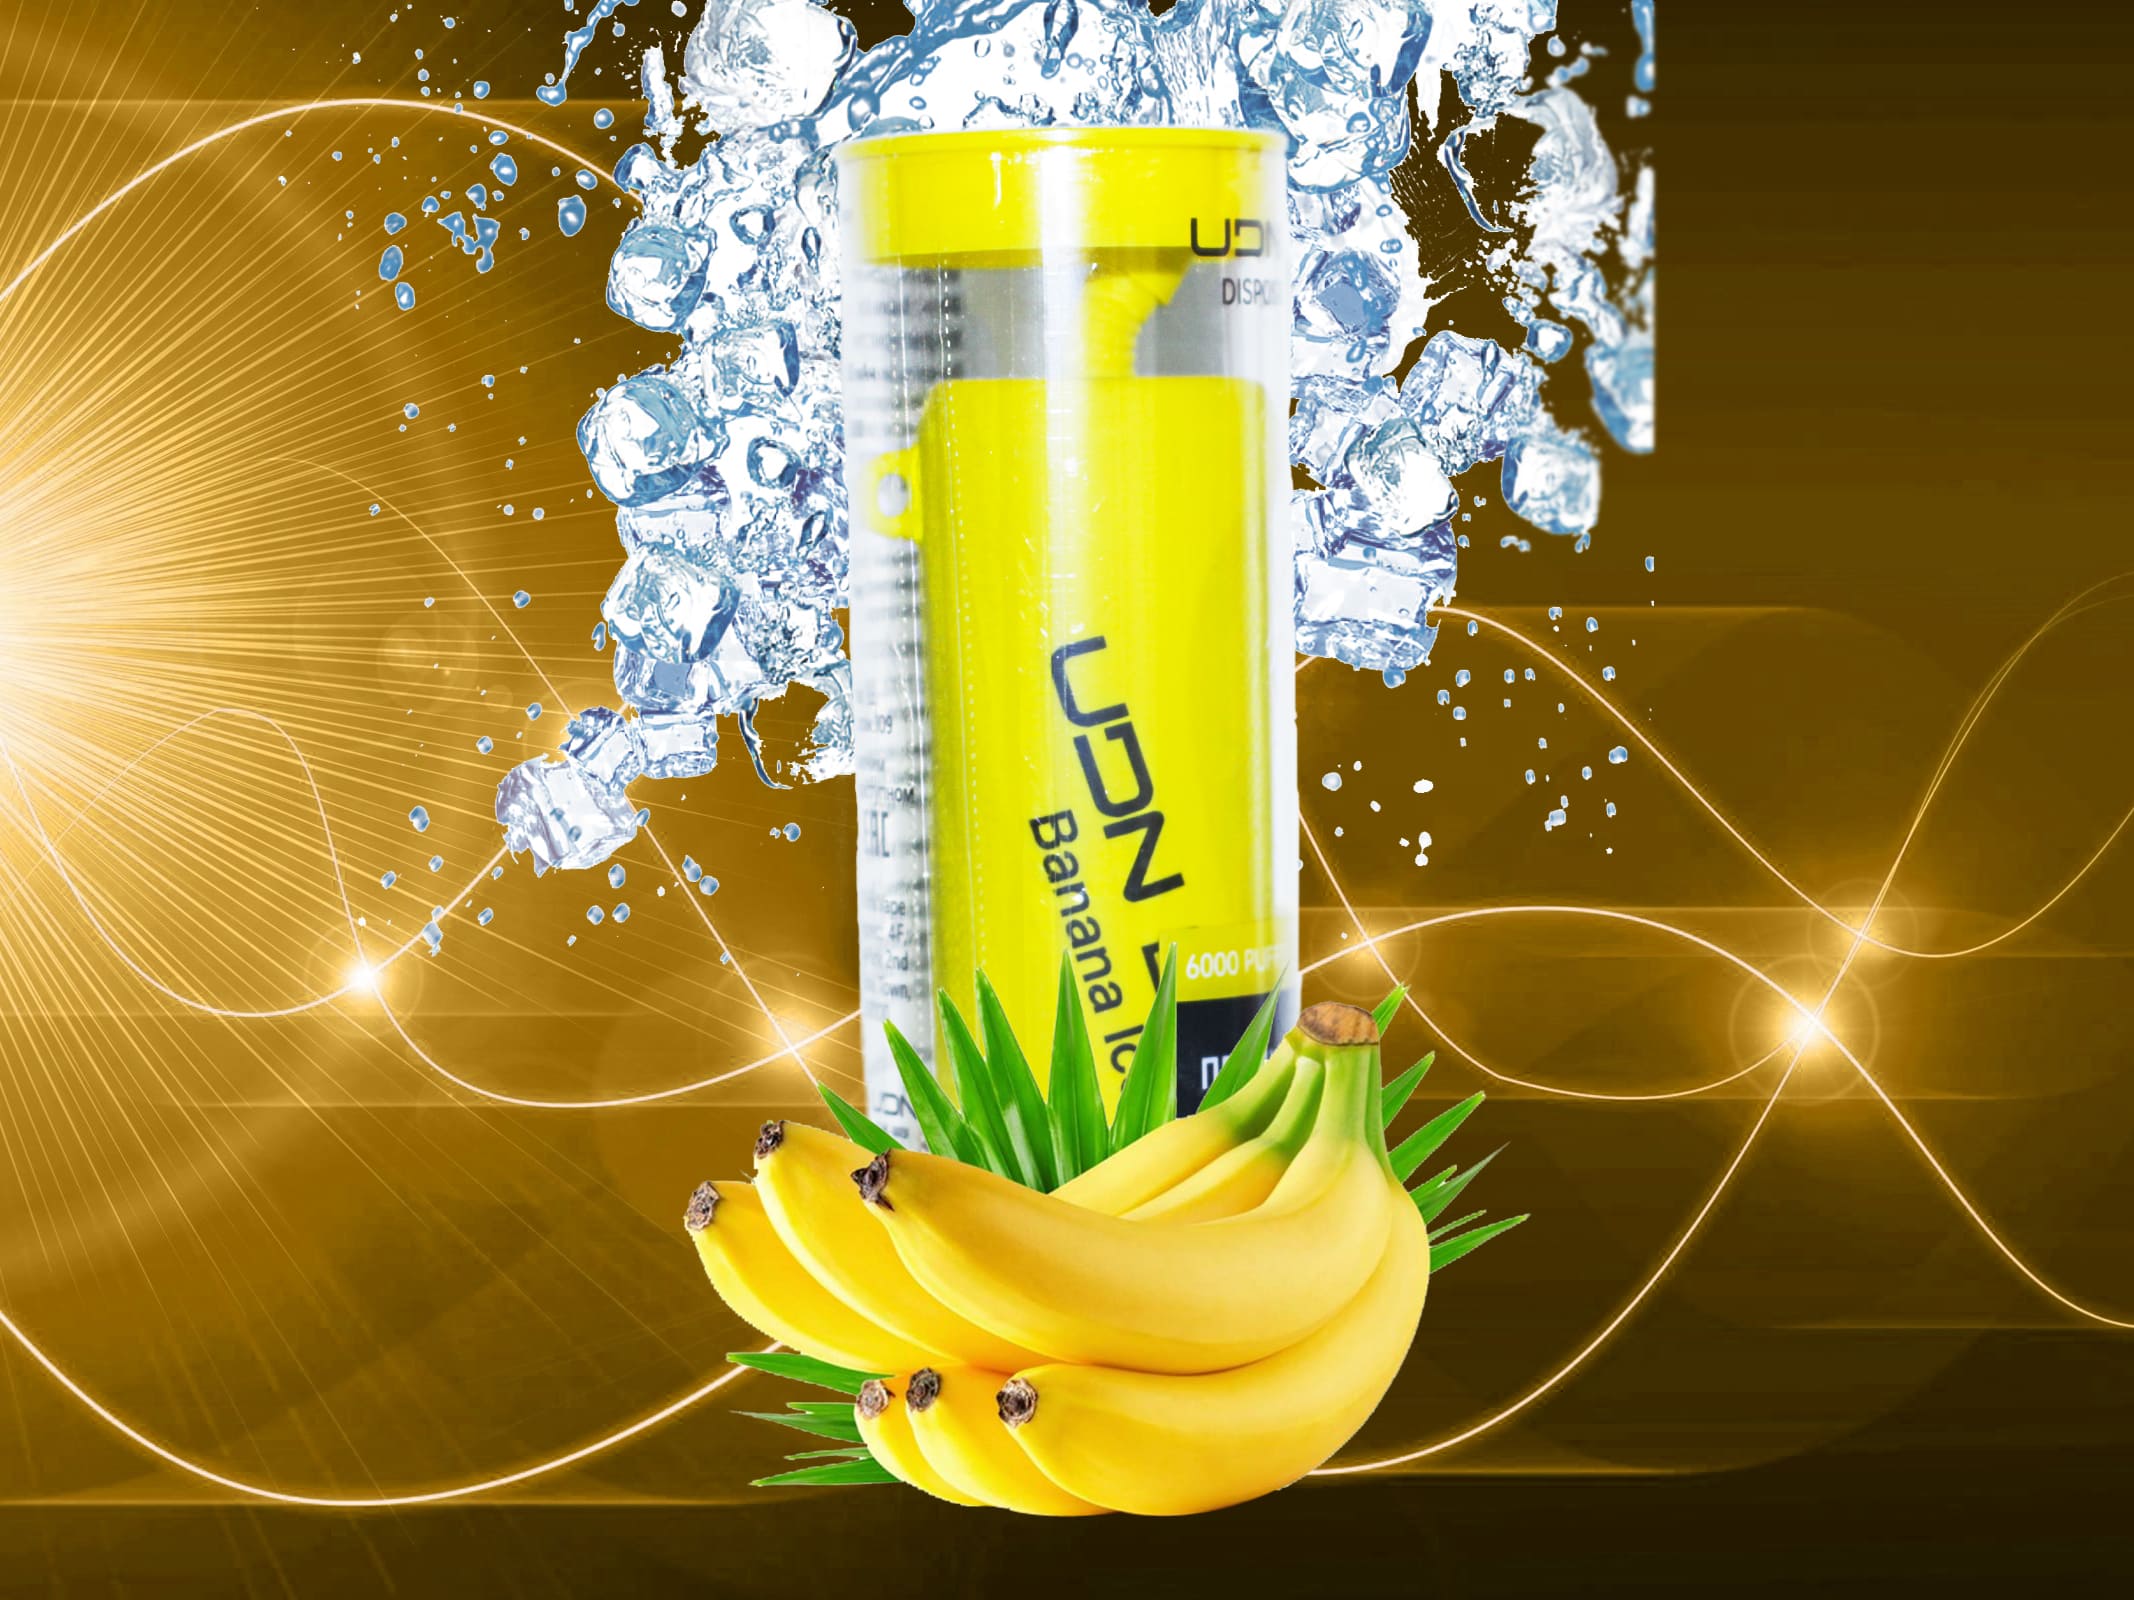 UDN BAR 6000 V2 / Banana ice